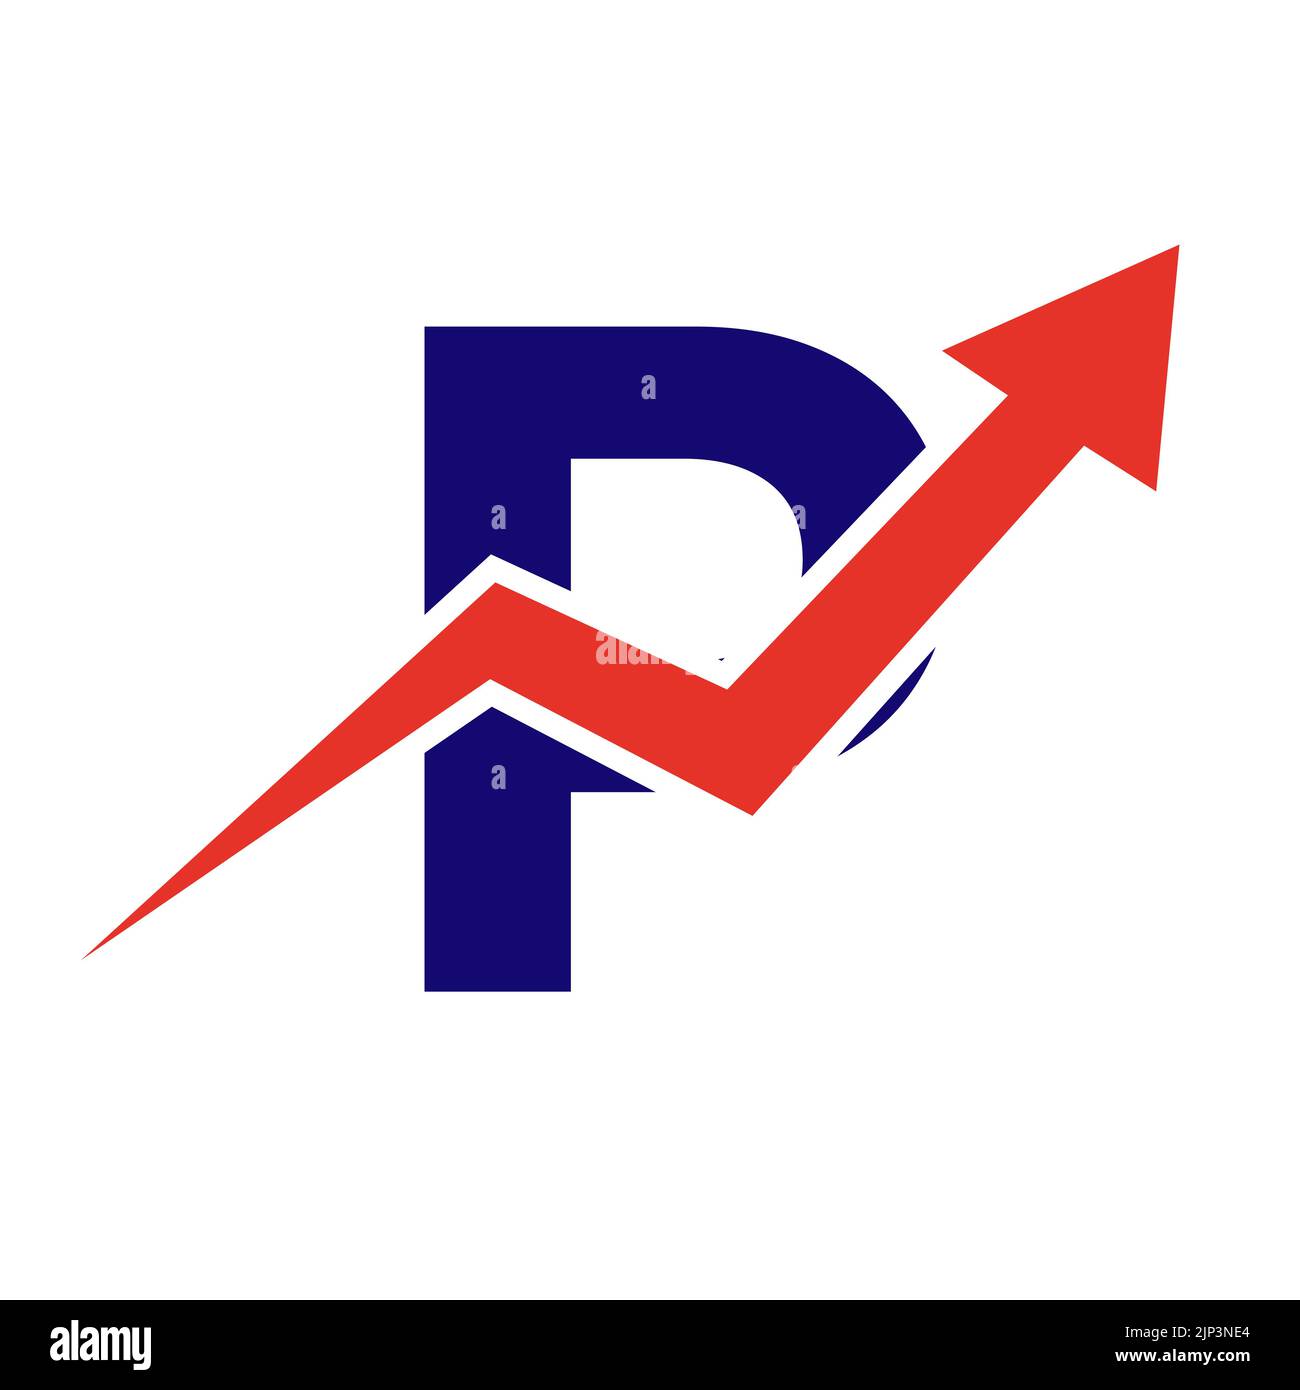 Buchstabe P Finanzlogo. Finanz- und Finanzinvestitionsentwicklung Logo Template Konzept mit Business Growth Arrow Stock Vektor